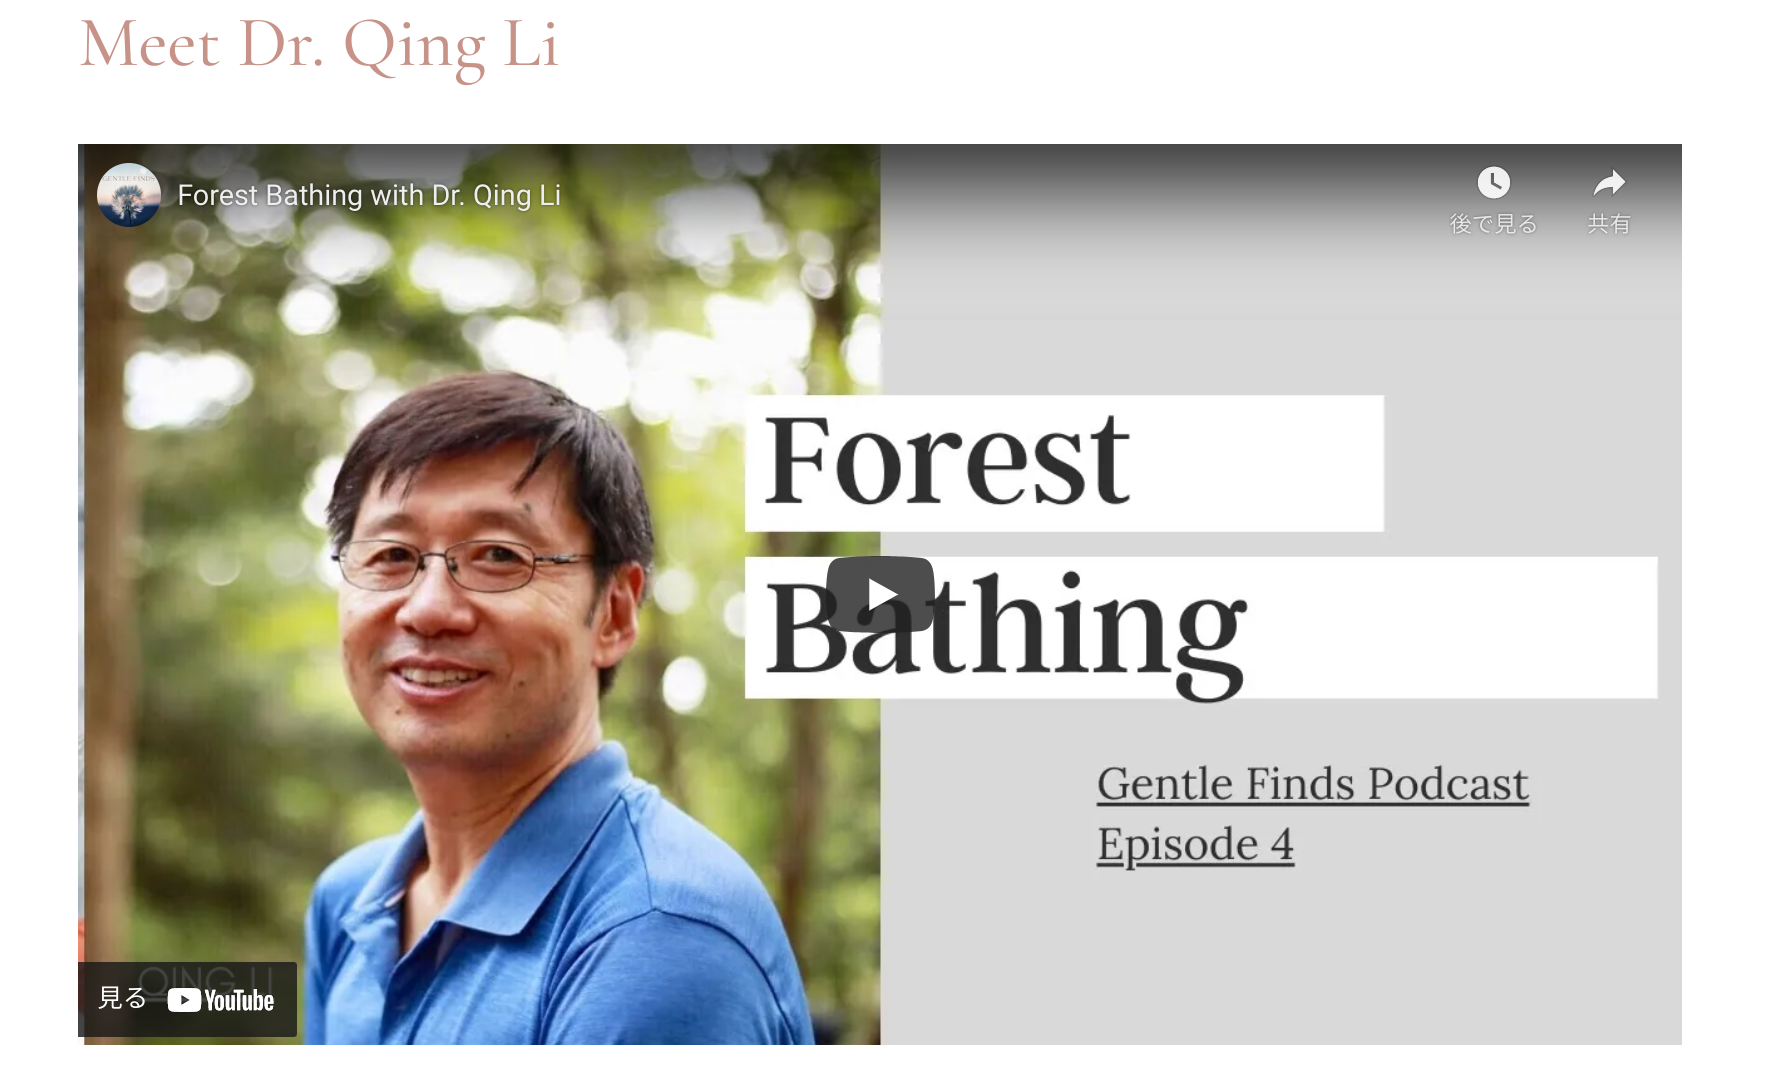 Meet Dr. Qing Li